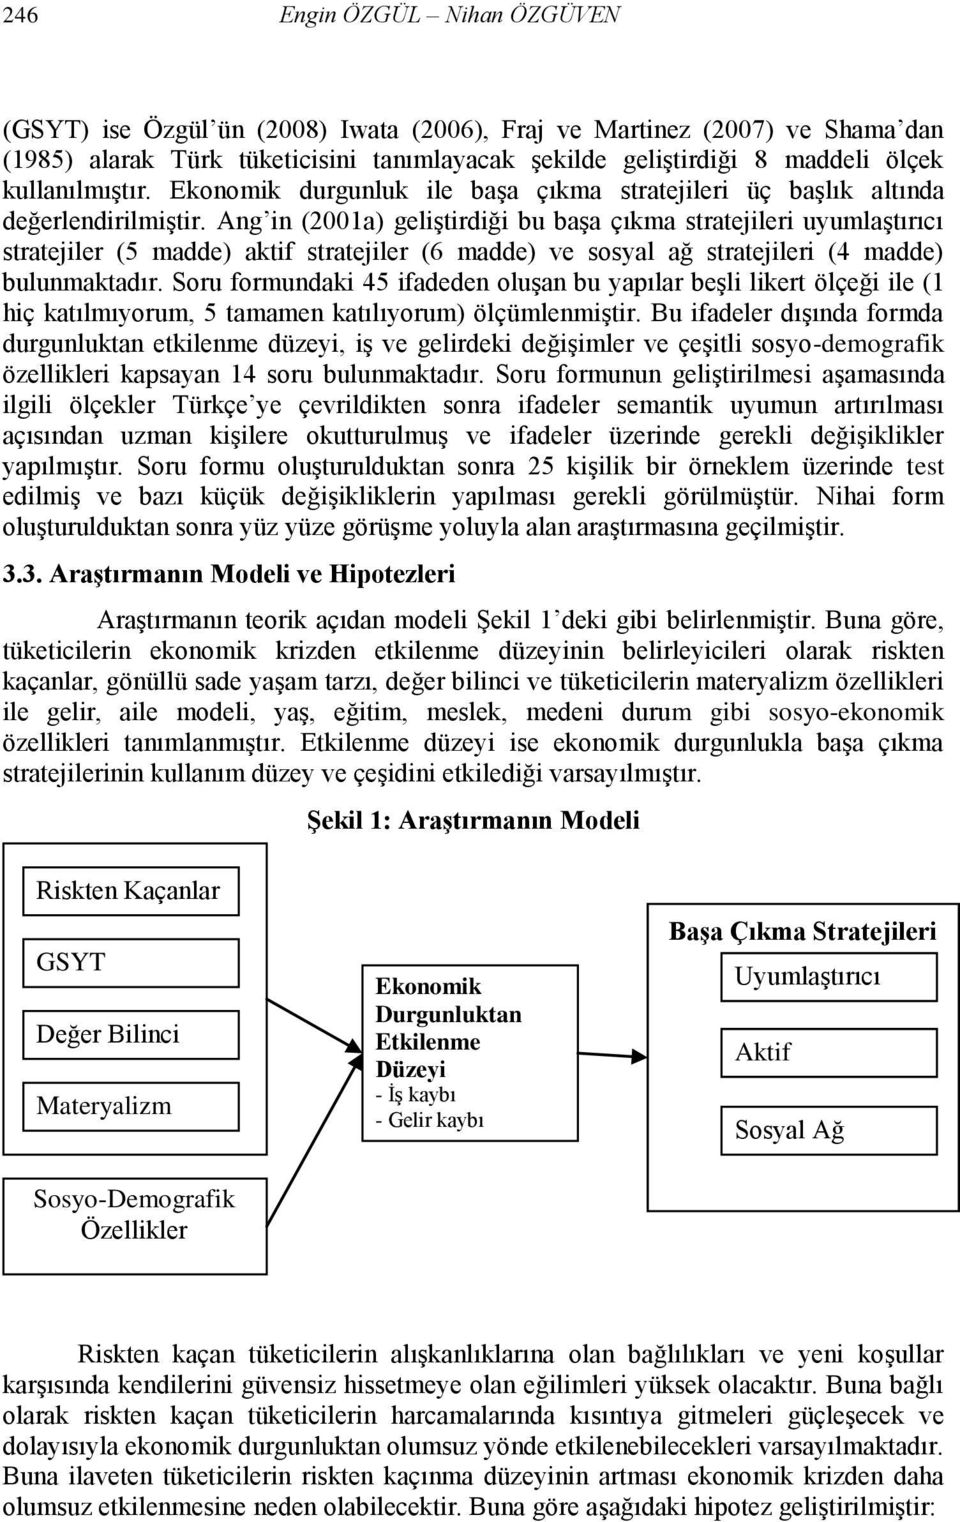 Ang in (2001a) geliģtirdiği bu baģa çıkma stratejileri uyumlaģtırıcı stratejiler (5 madde) aktif stratejiler (6 madde) ve sosyal ağ stratejileri (4 madde) bulunmaktadır.